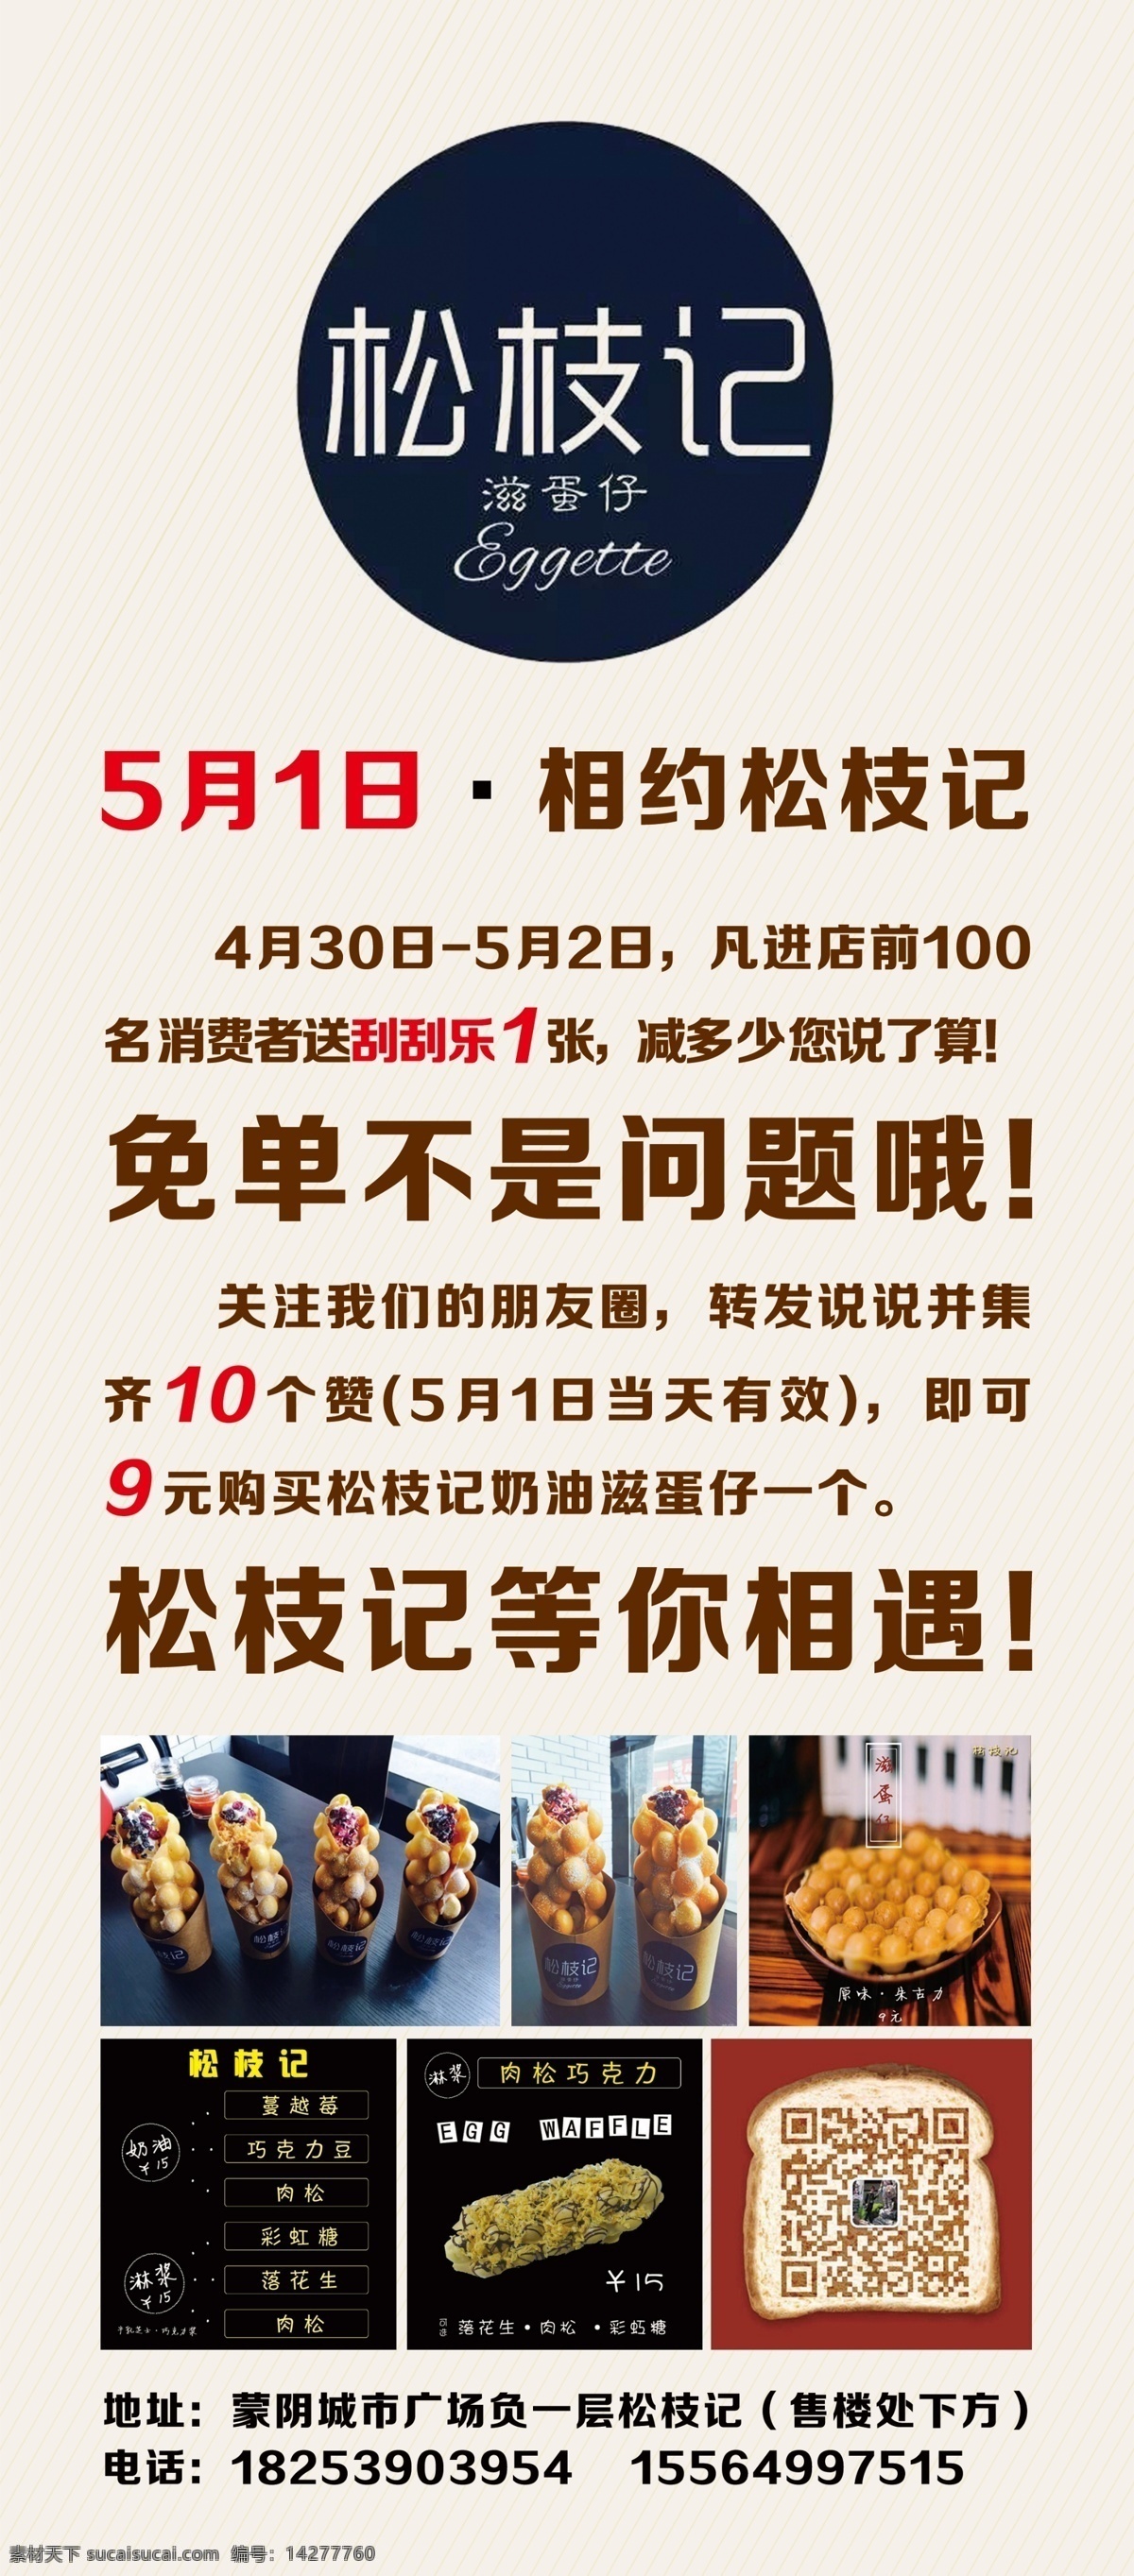 鸡蛋仔 鸡蛋 点心 西点 小吃 香港 美食 奶油 蛋仔 蔓越莓 海报 展架 宣传海报 南方小吃 展板